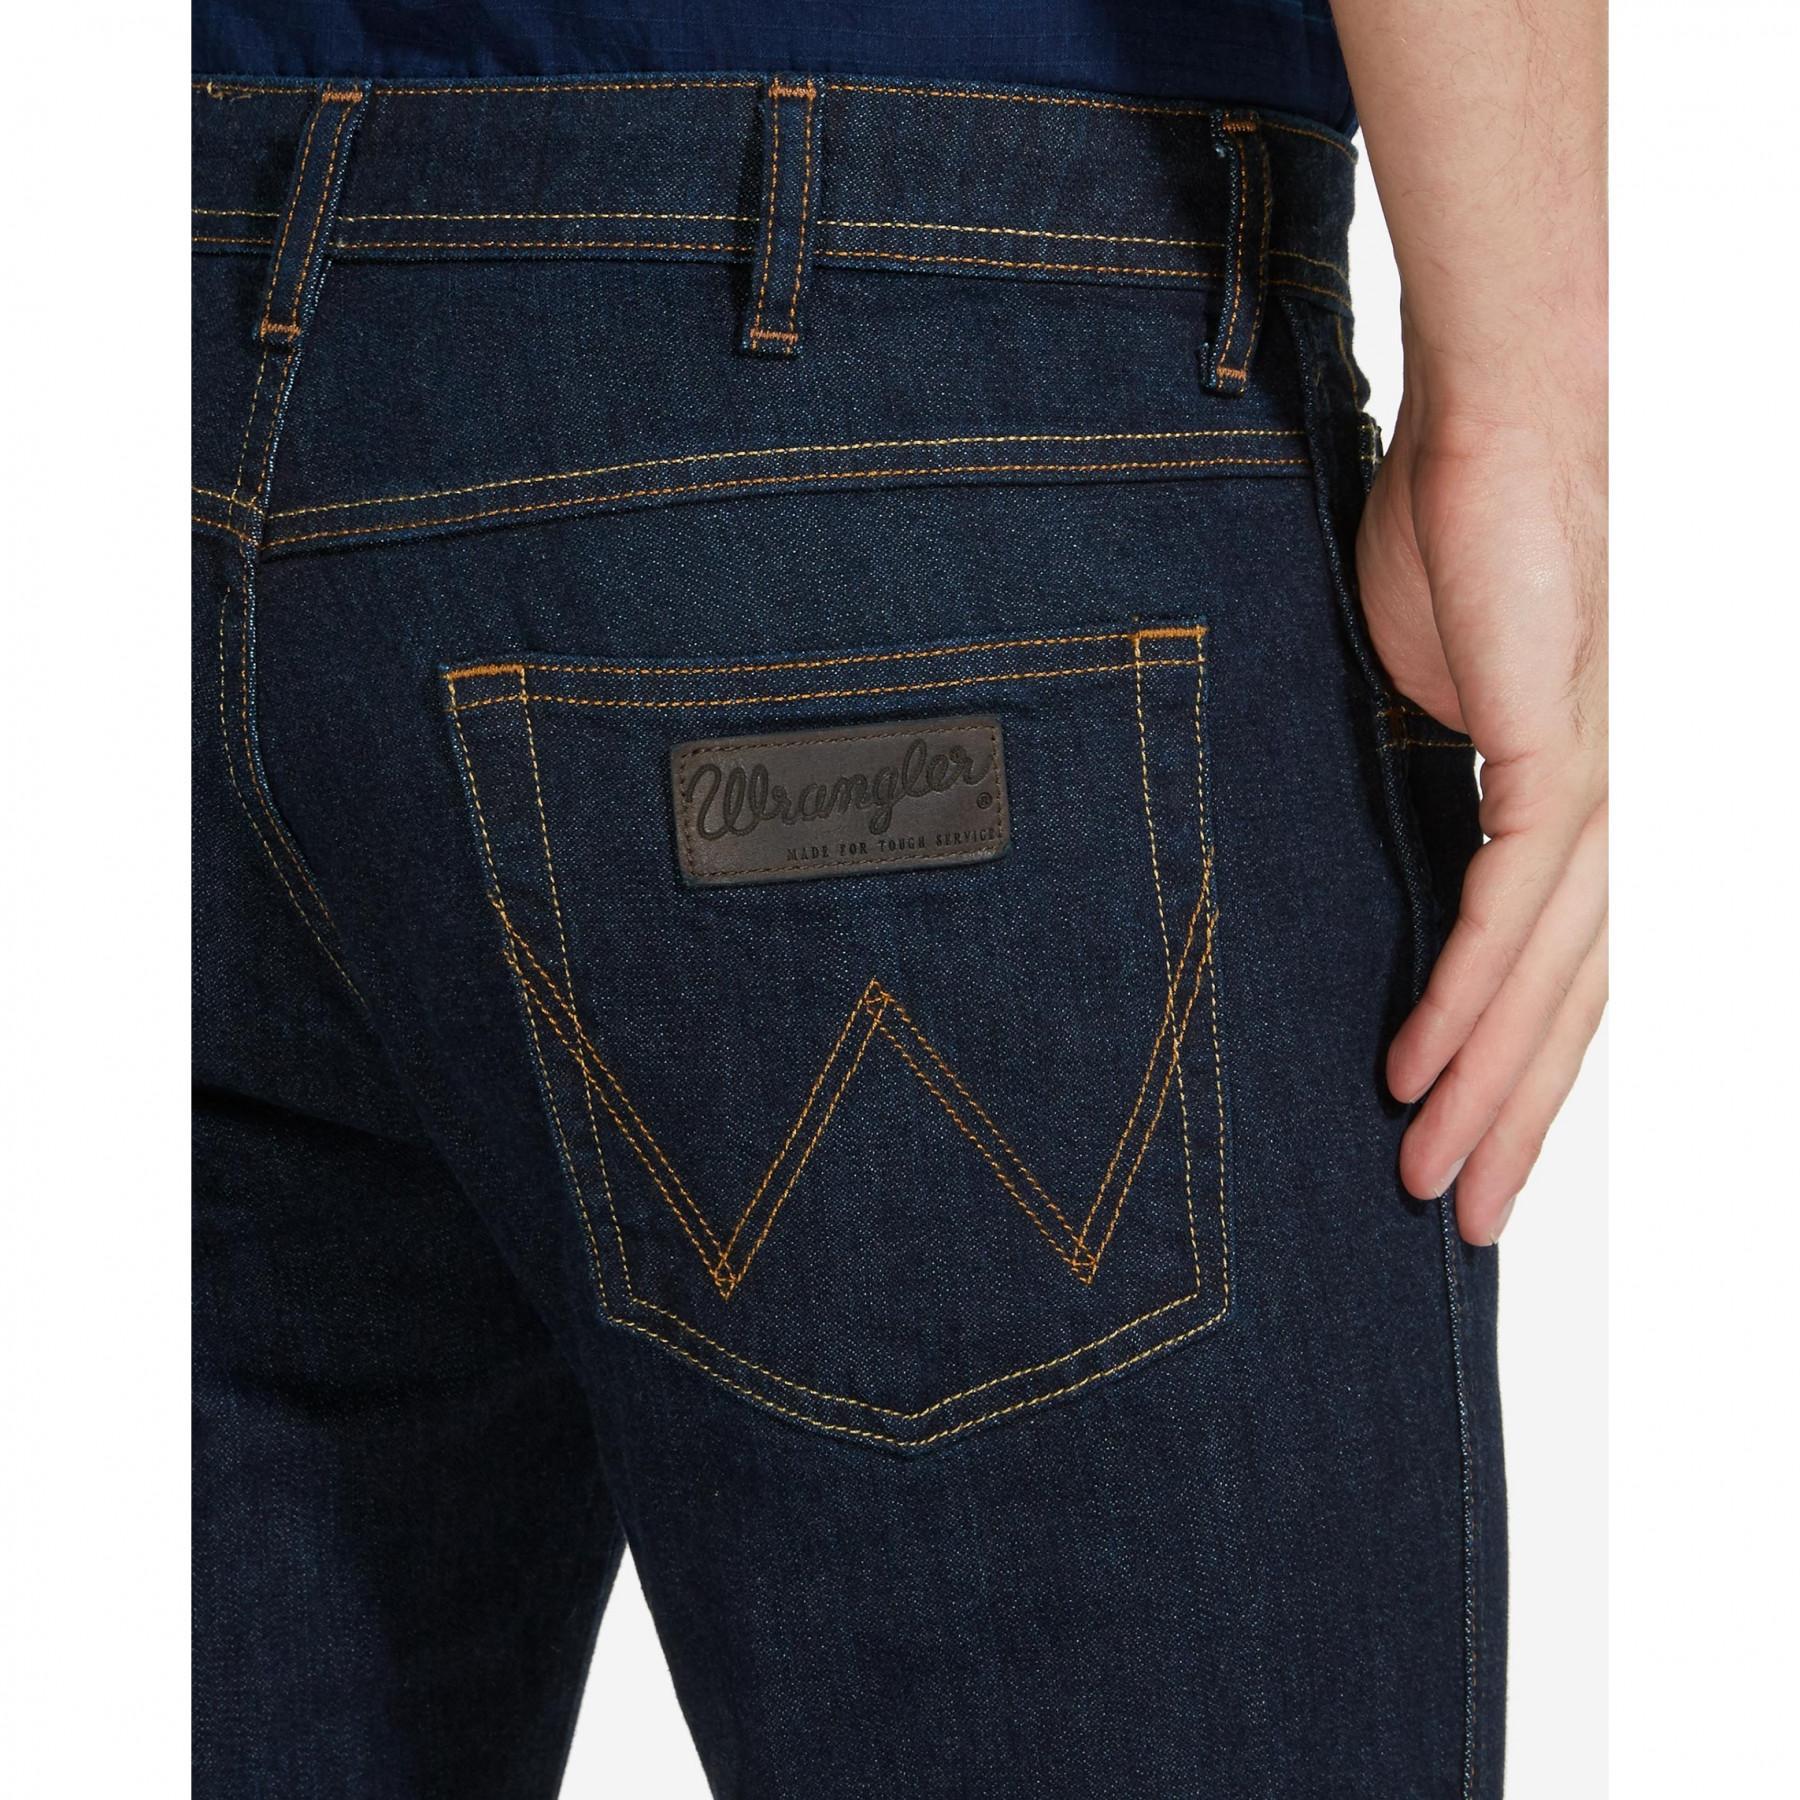 Jeans Wrangler arizona stretch raw